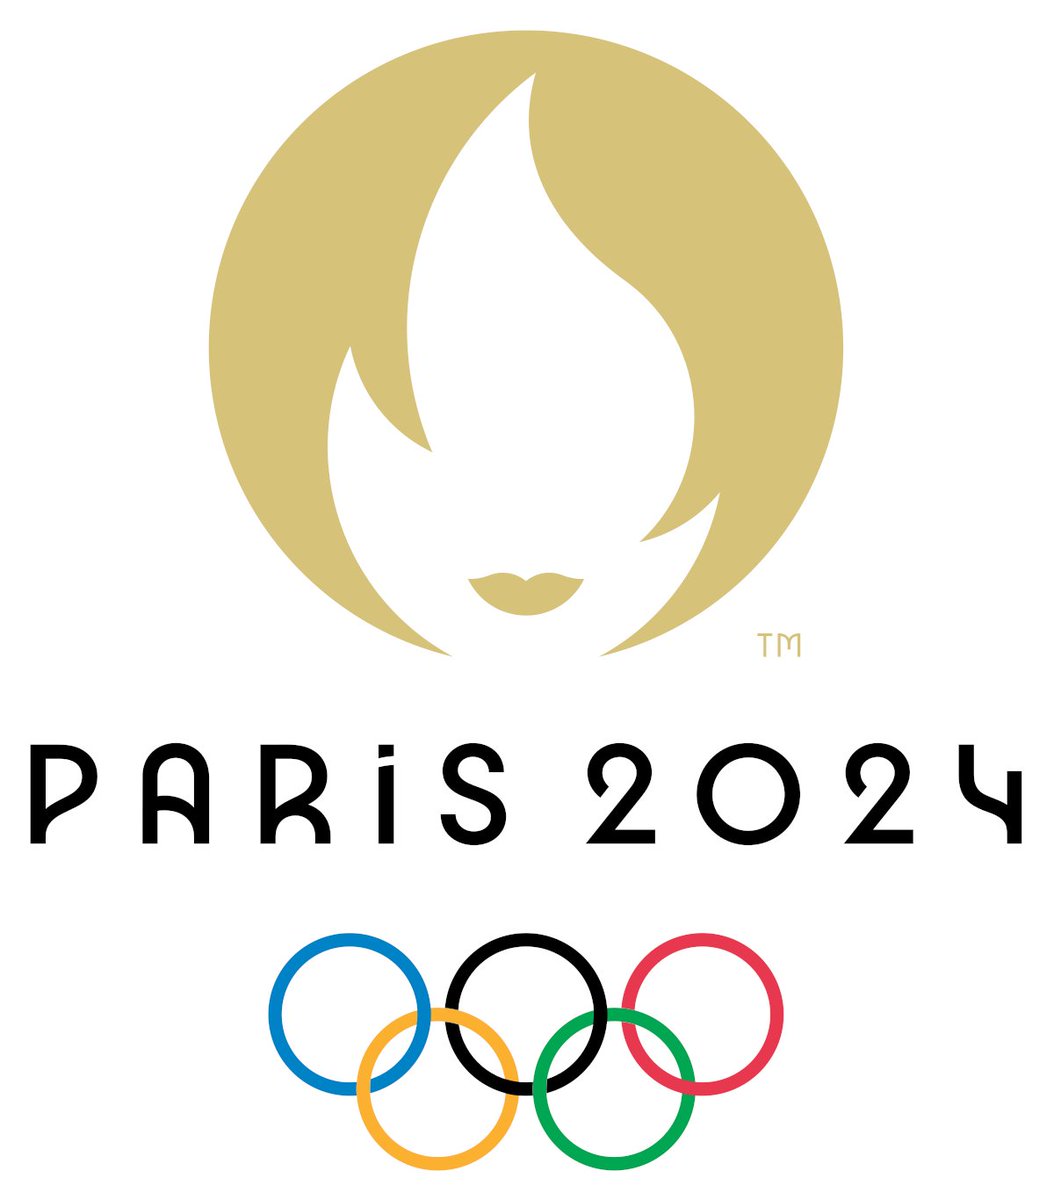 奥运休战   --  考验智慧  #Paris2024  #SummerOlympics                                                                       1.  俄运动员以什么样名义参加                                            2. 巴勒斯坦参加能不能带加沙的儿童出现开幕式